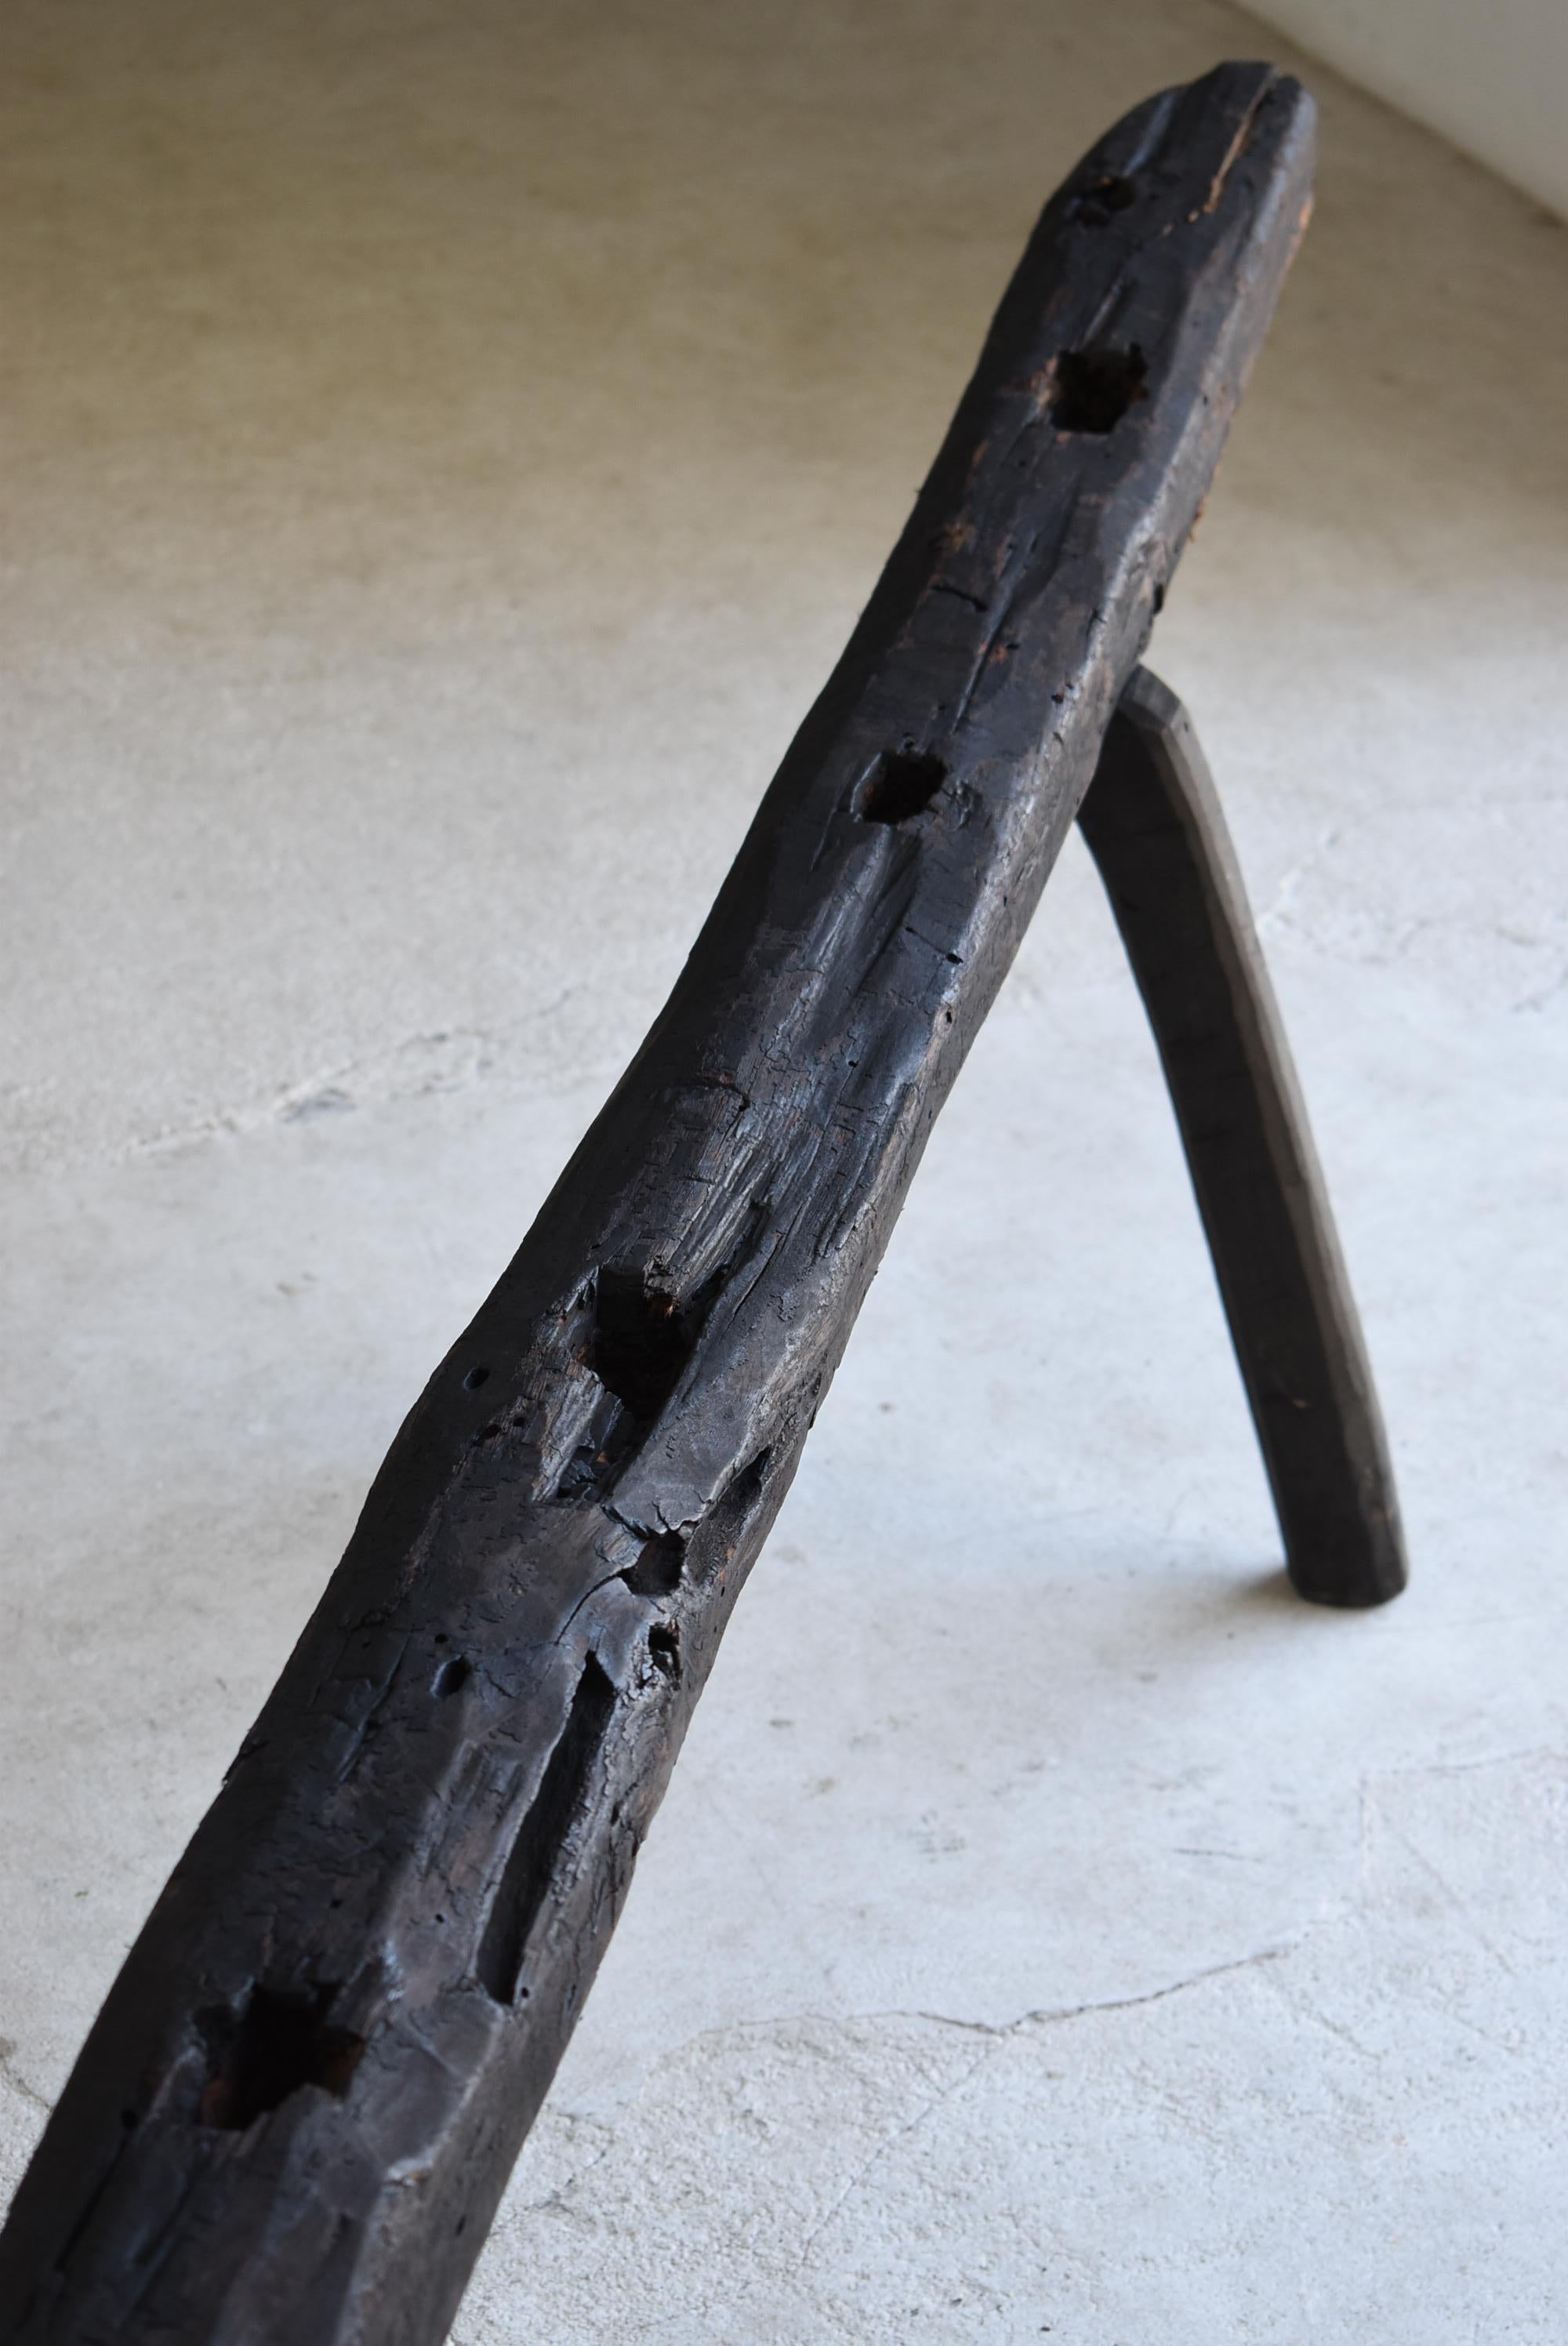 Cedar Japanese Antique Primitive Bench 1860s-1900s / Long Chairs Mingei Wabisabi